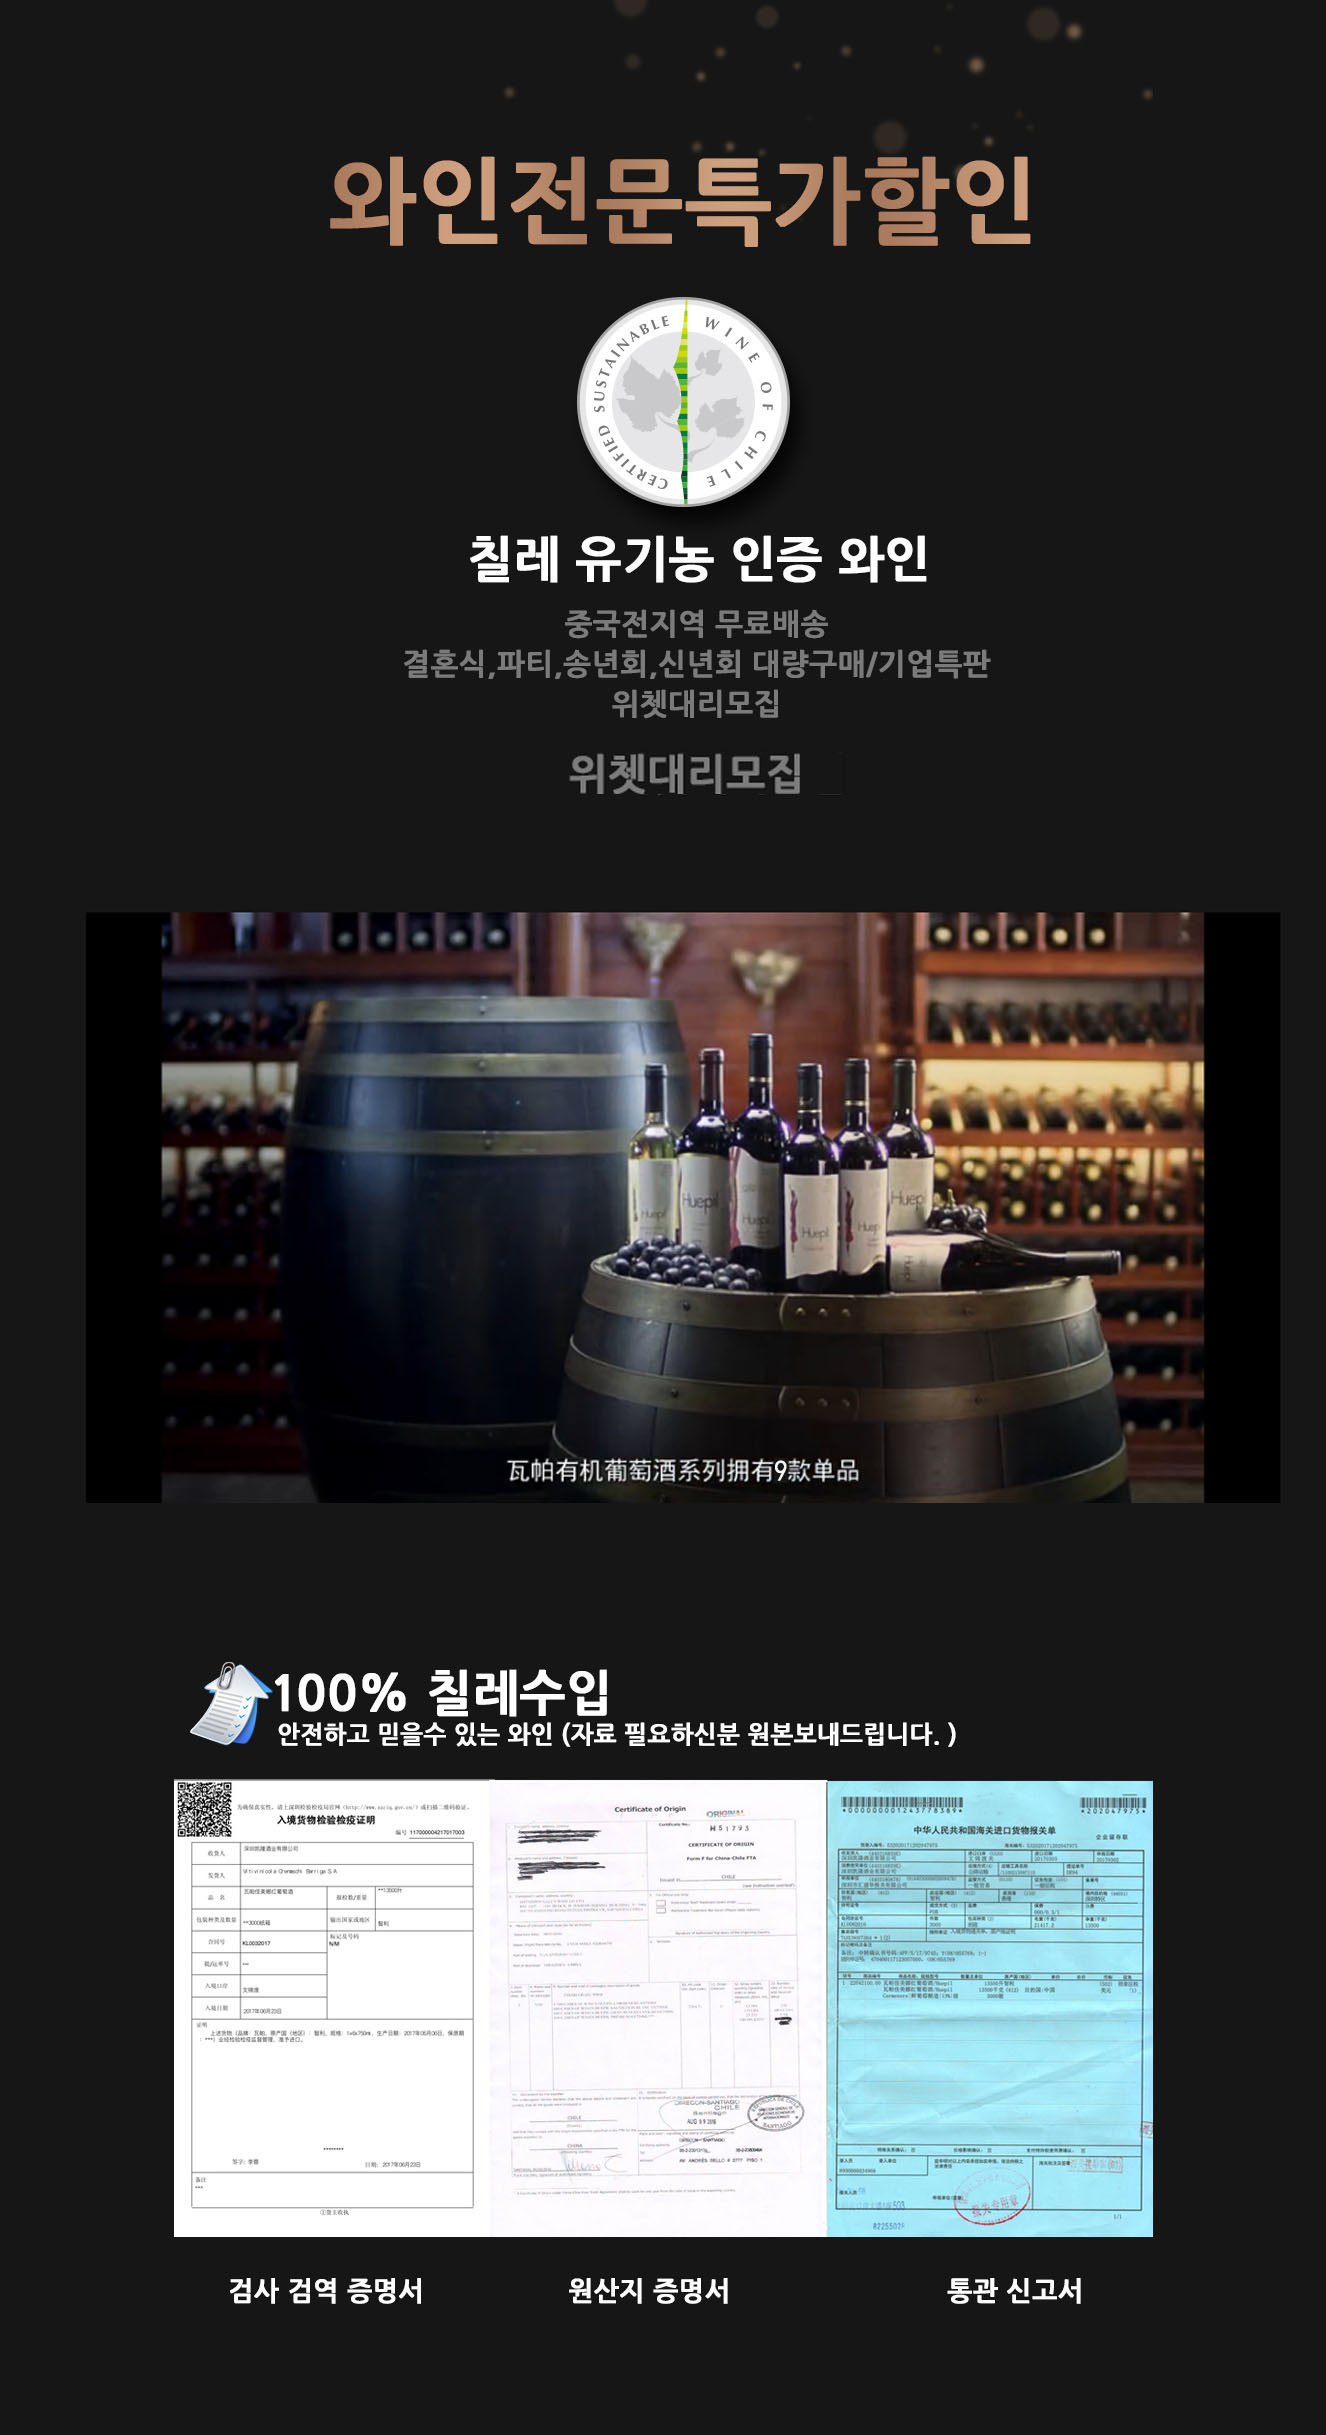 恭喜瓦帕有机葡萄酒入驻国内最大韩国音乐及影视平台！